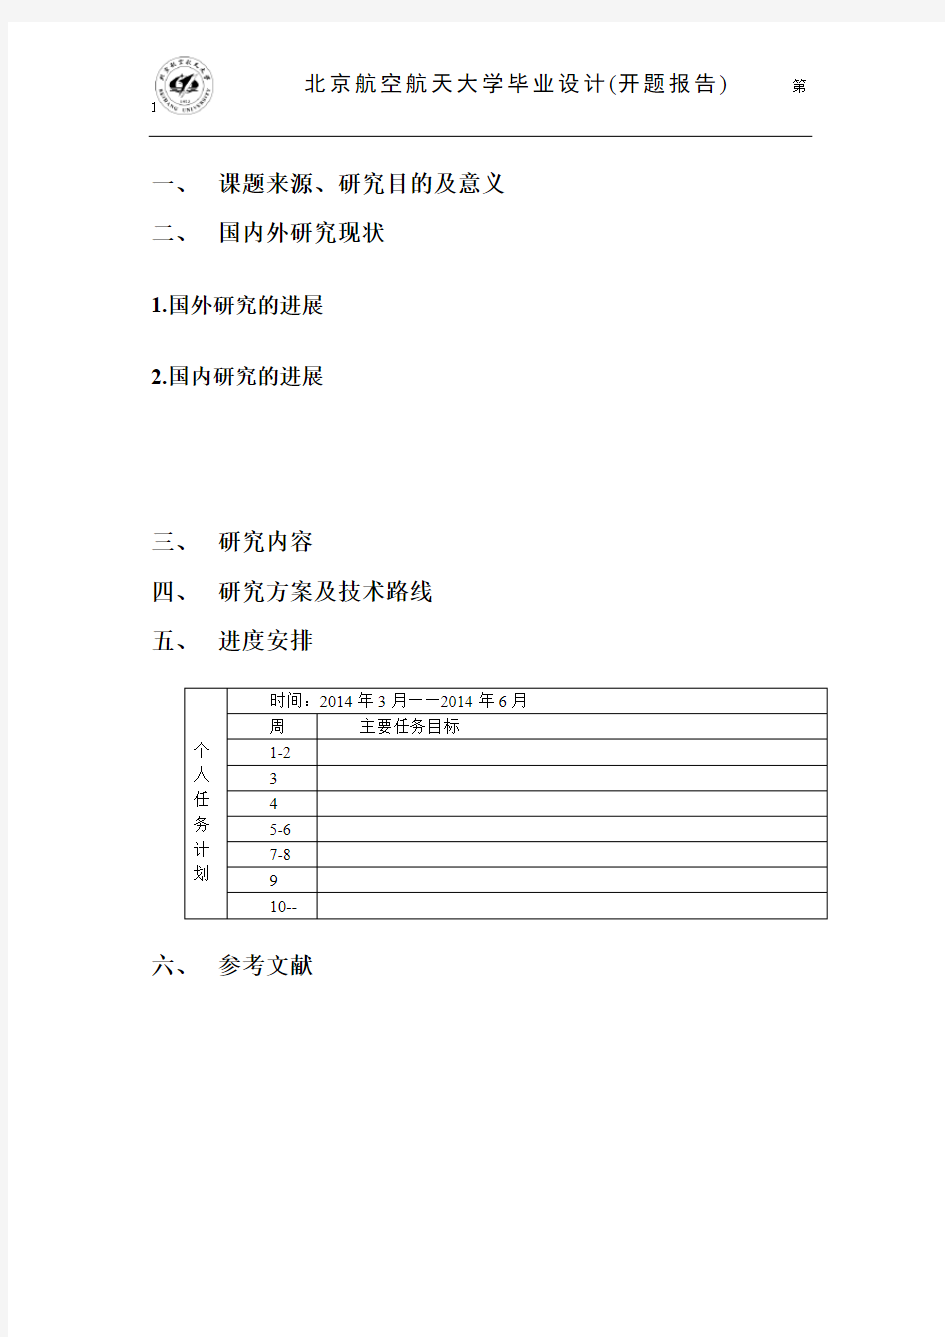 北京航空航天大学毕业设计开题报告模板